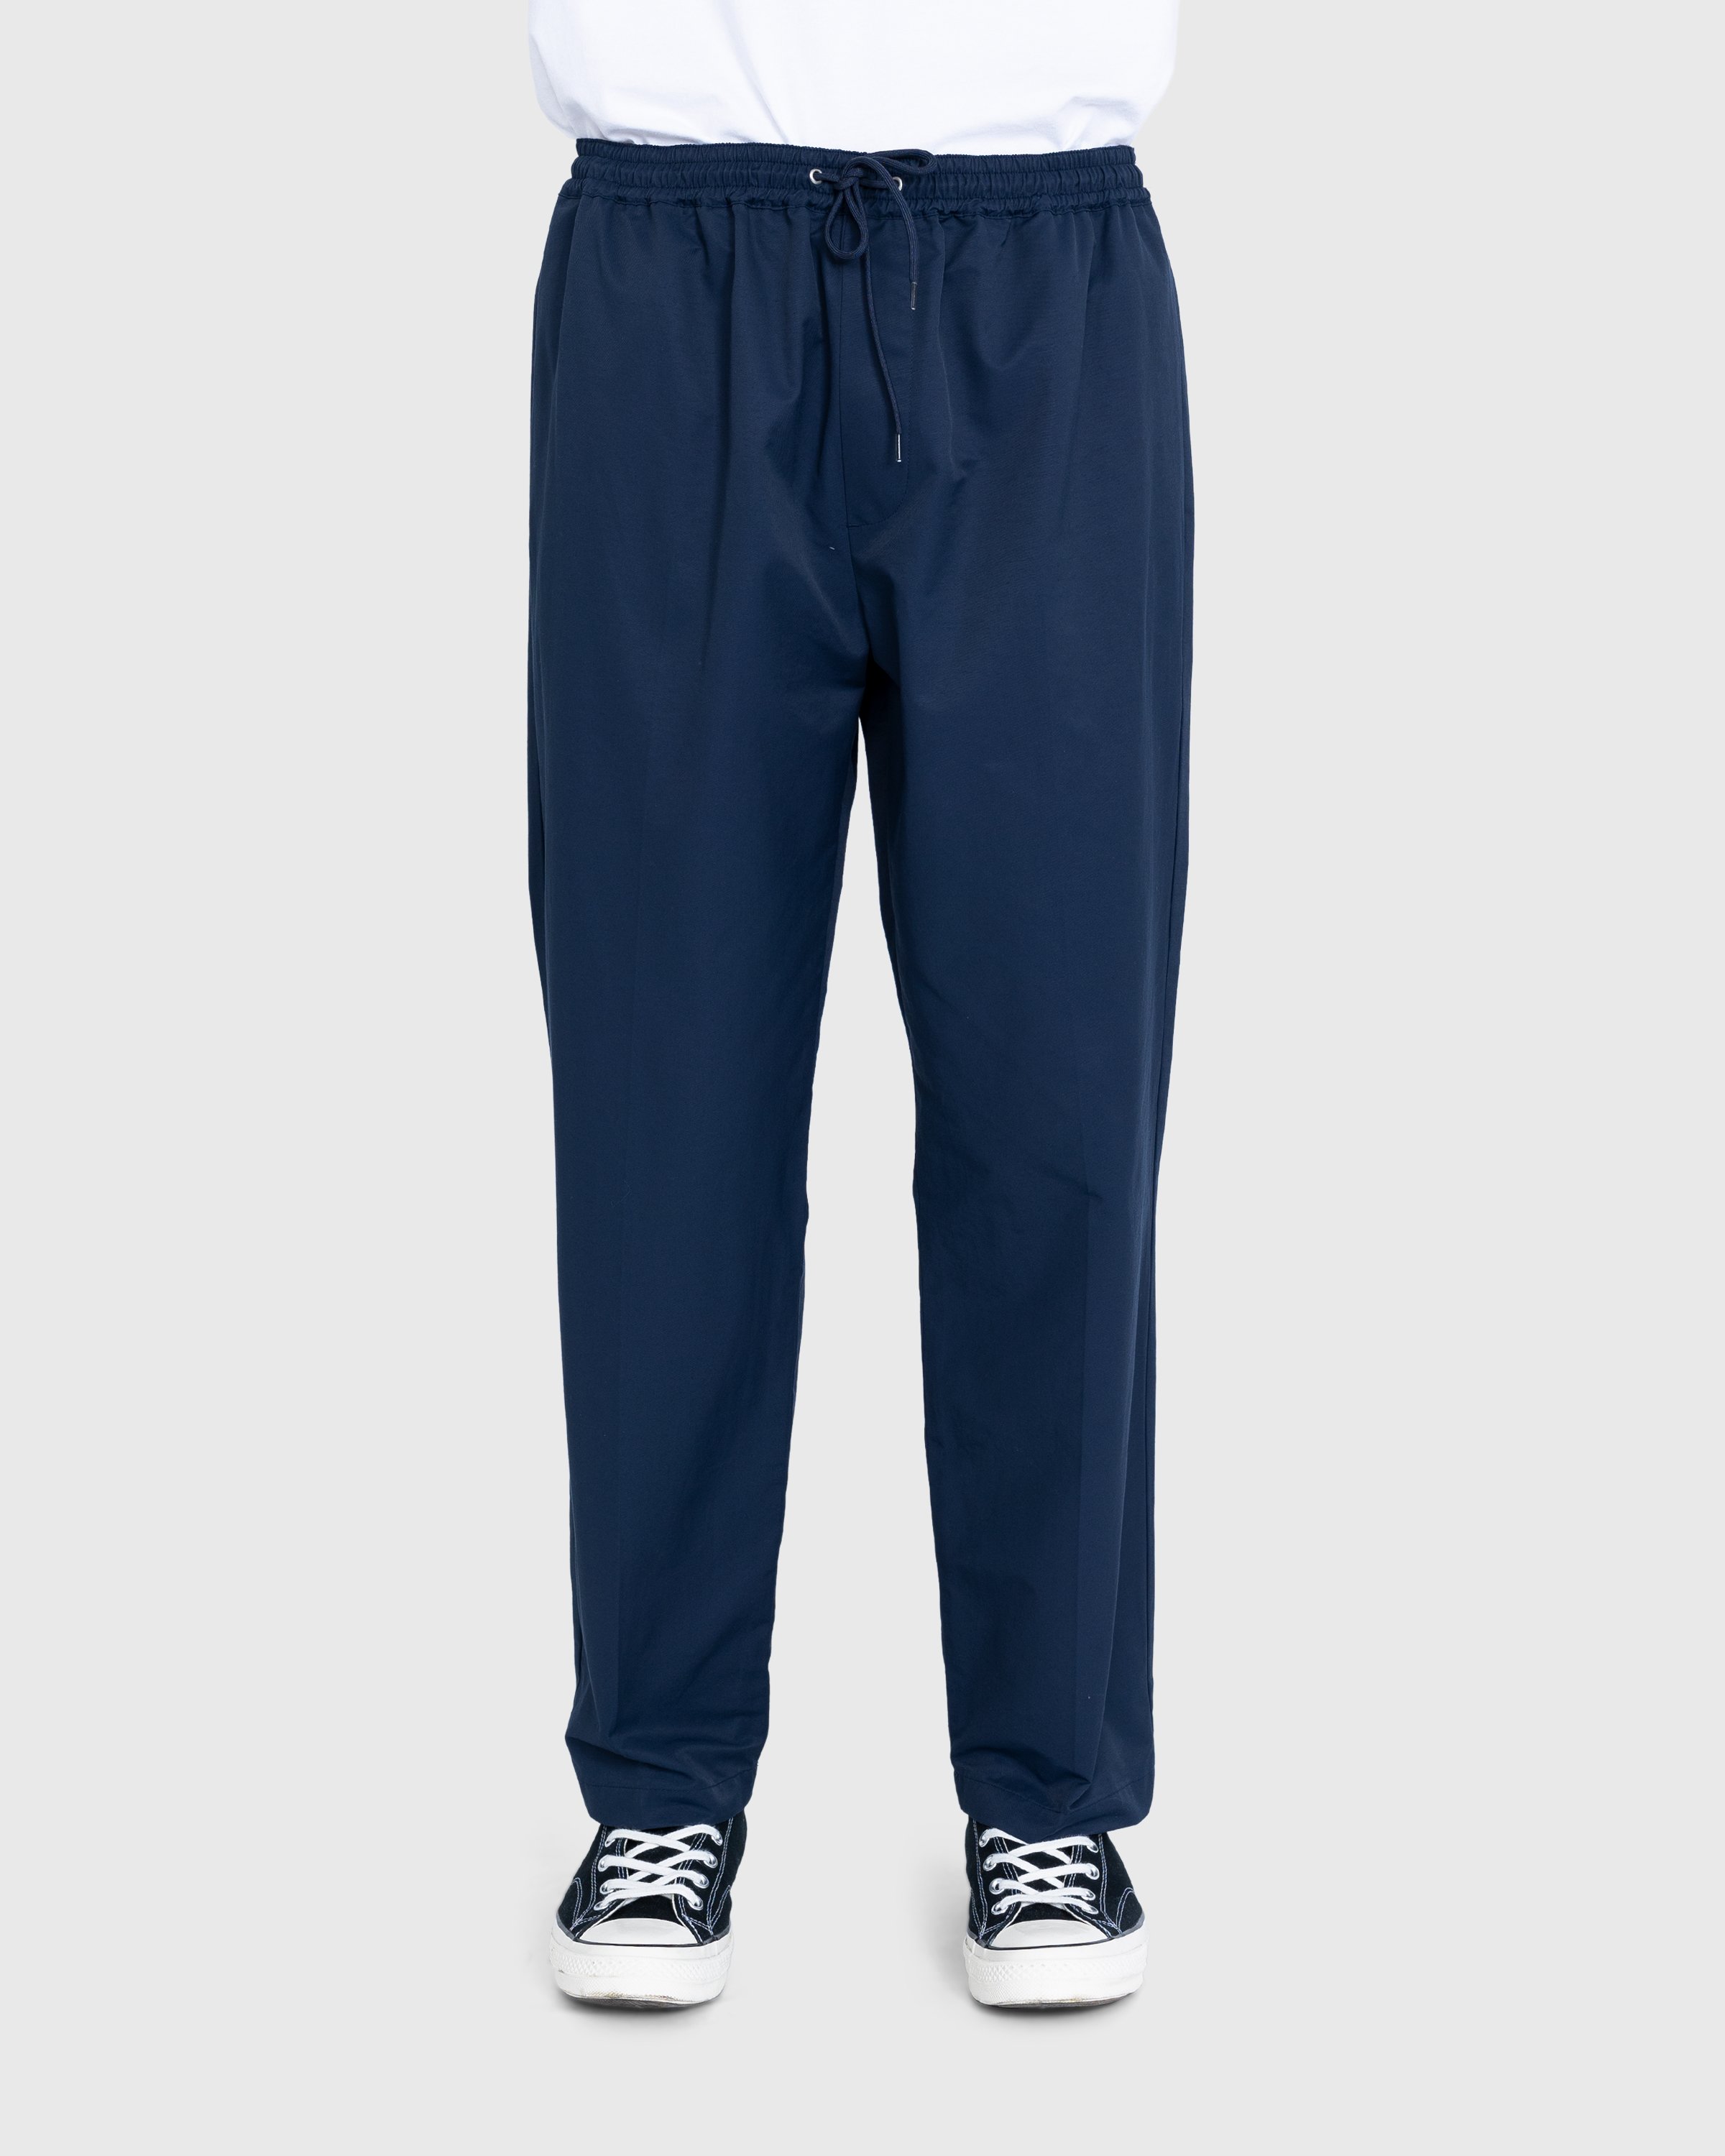 Highsnobiety - Cotton Nylon Elastic Pants Navy - Clothing - Blue - Image 2